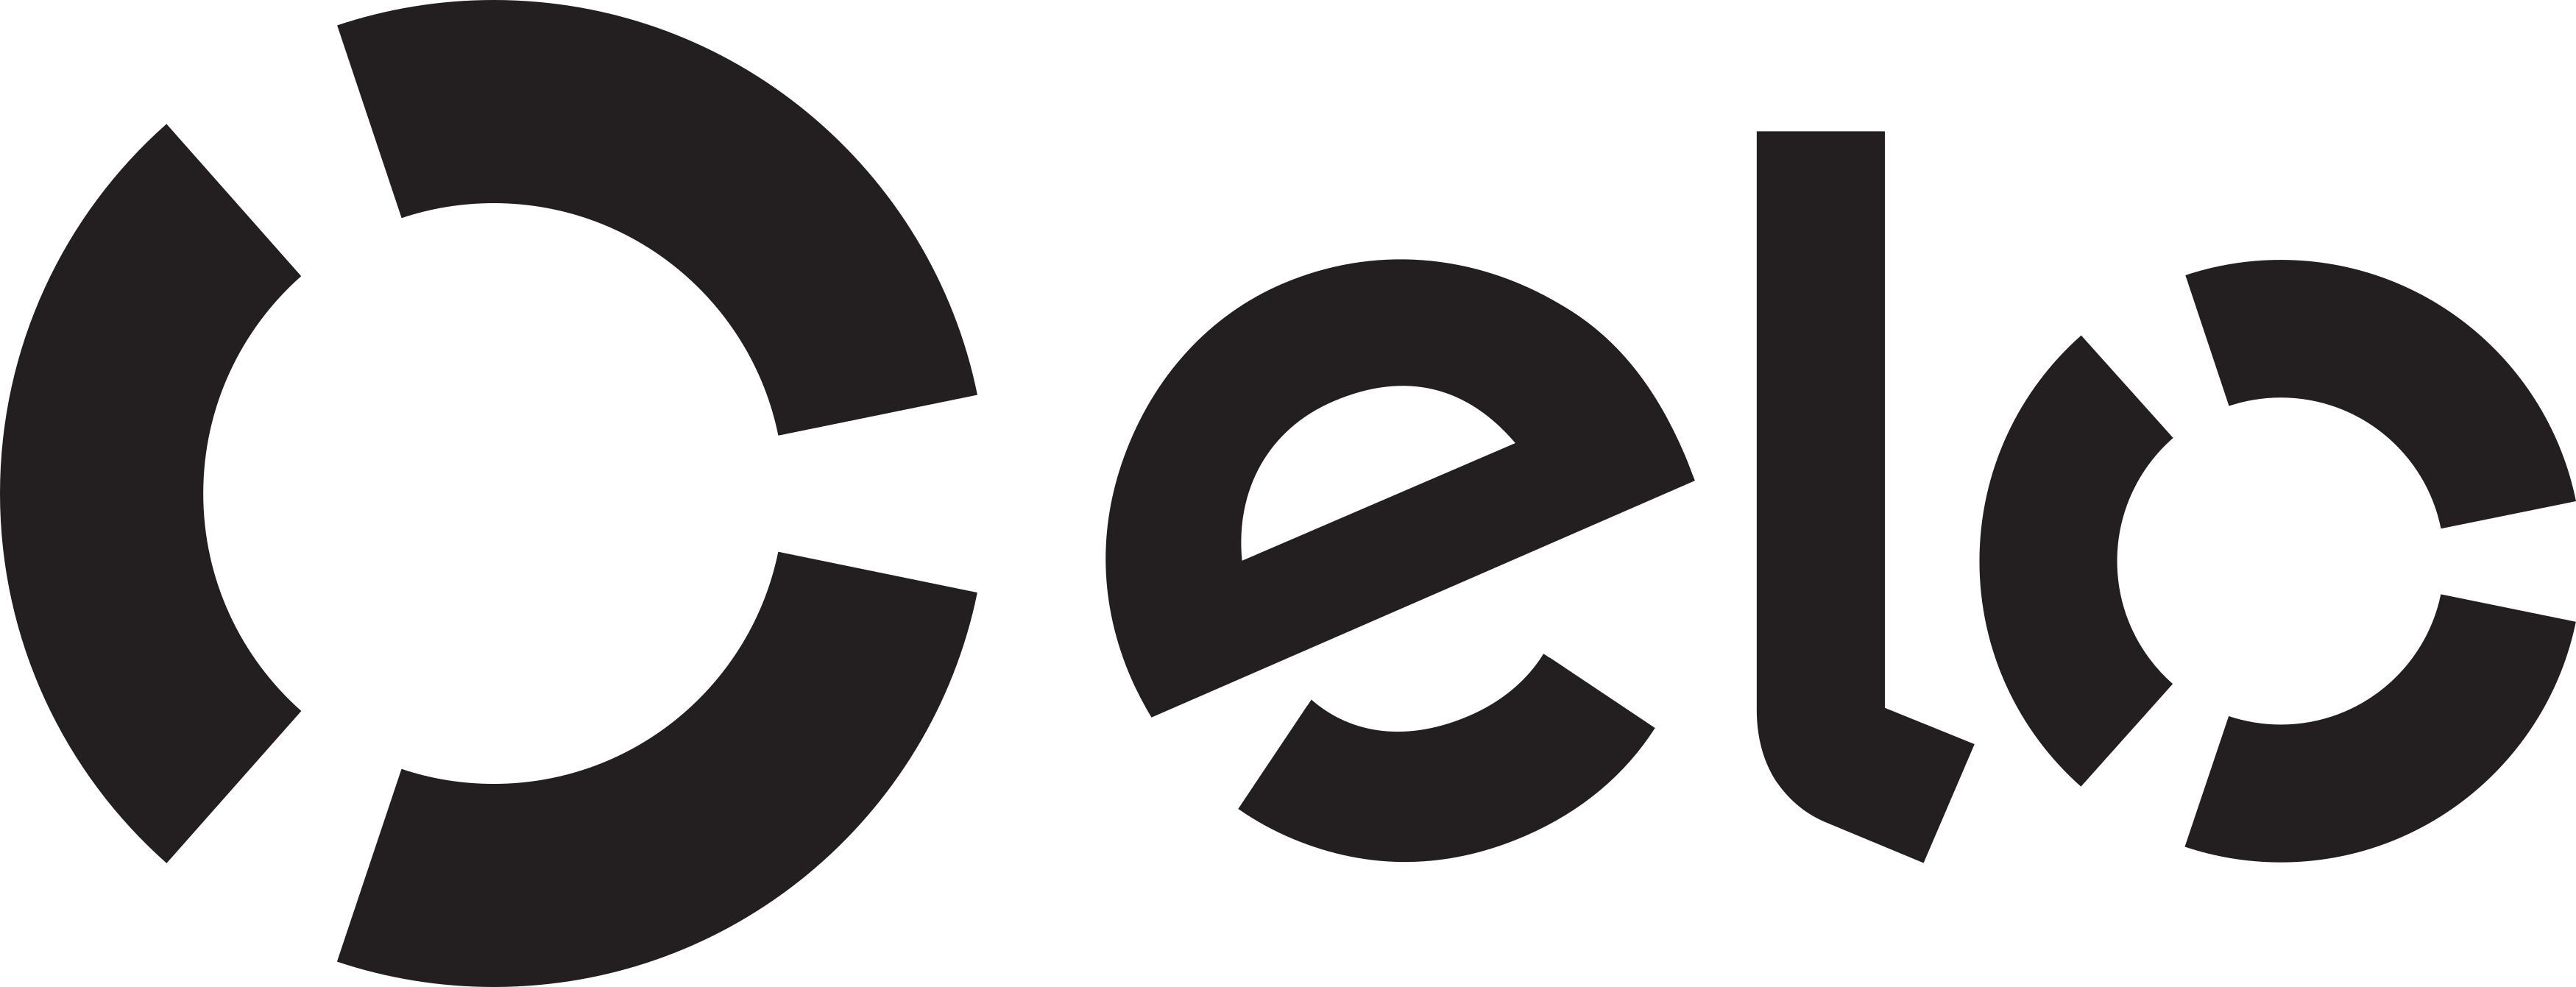 Elo Logo 3 19 De Junho De 2018 140 Kb 3500 × - Visa Clipart (3500x1341), Png Download